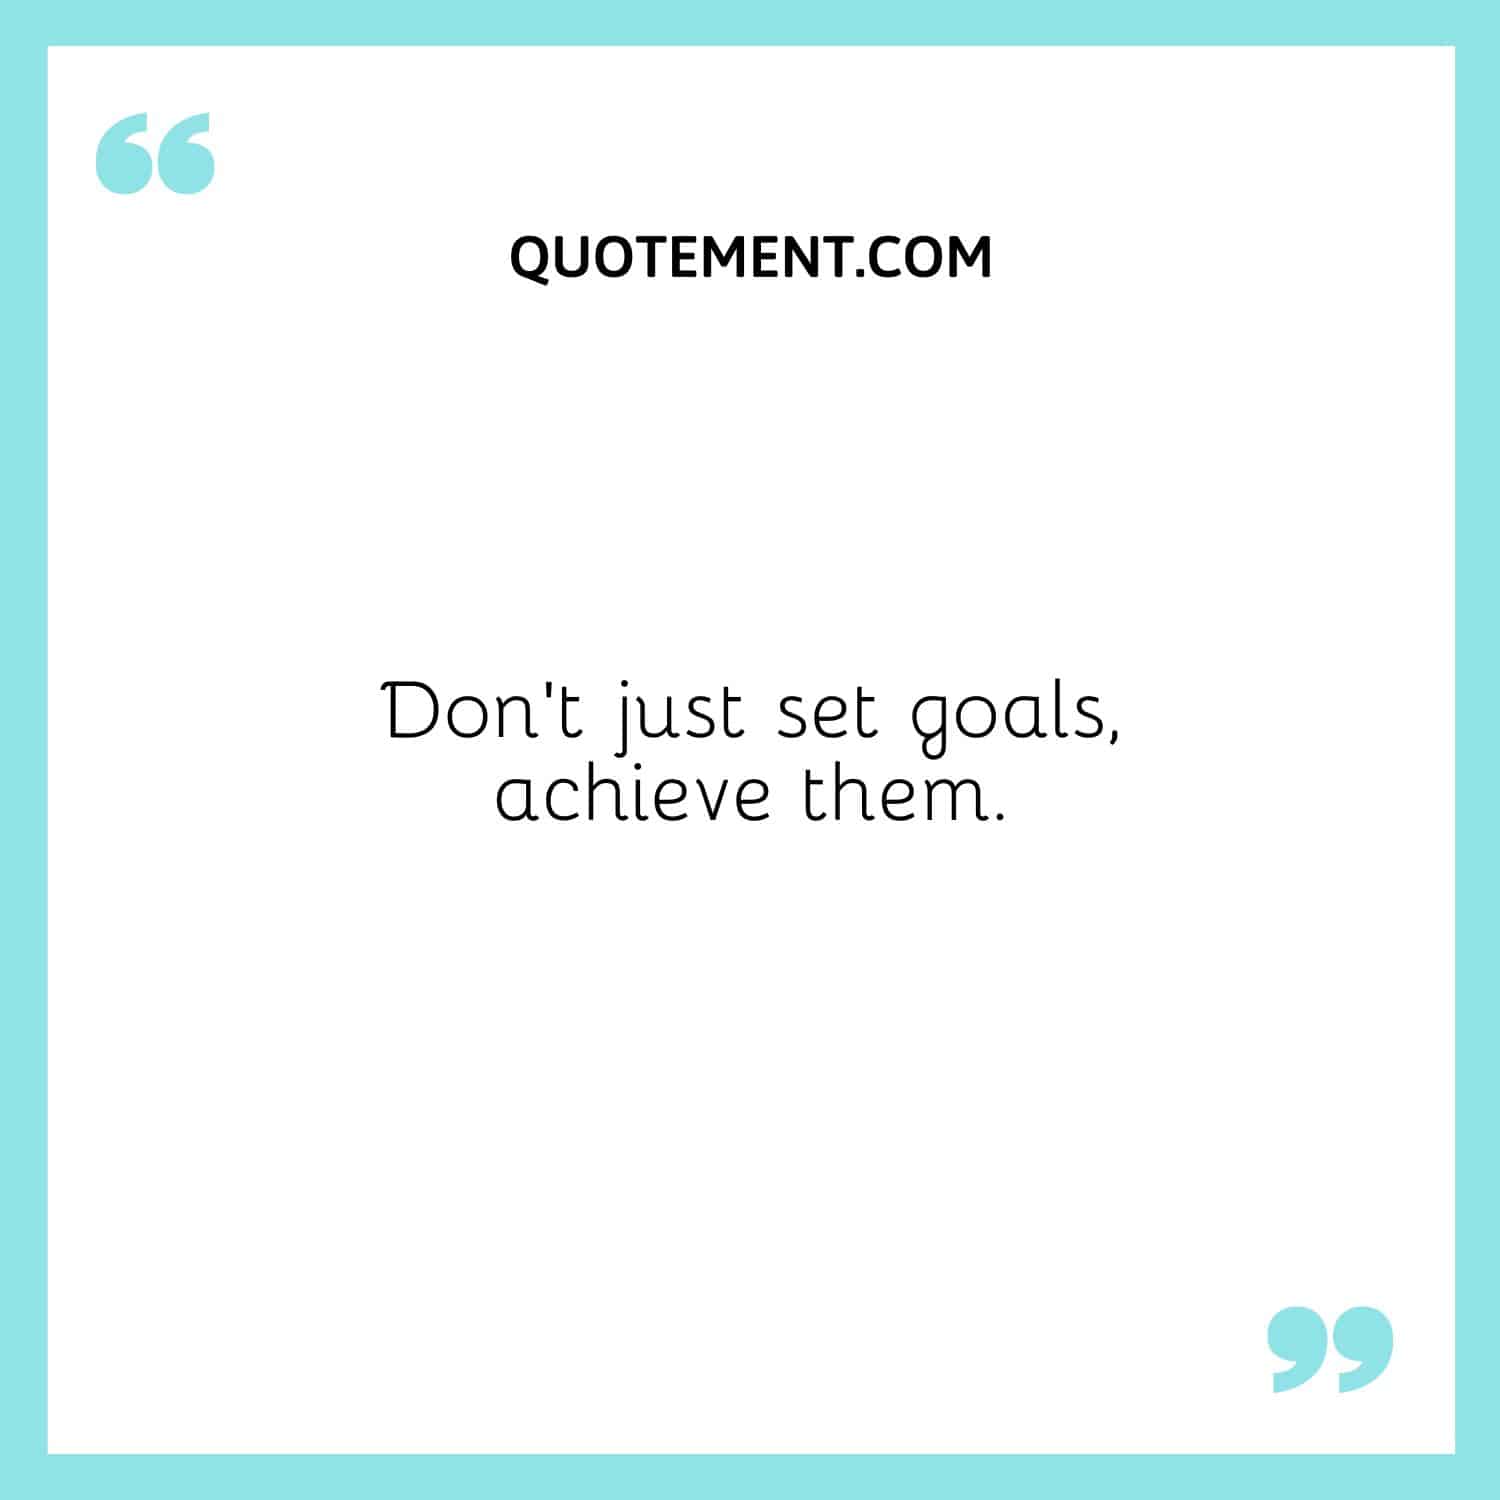 Don’t just set goals, achieve them.